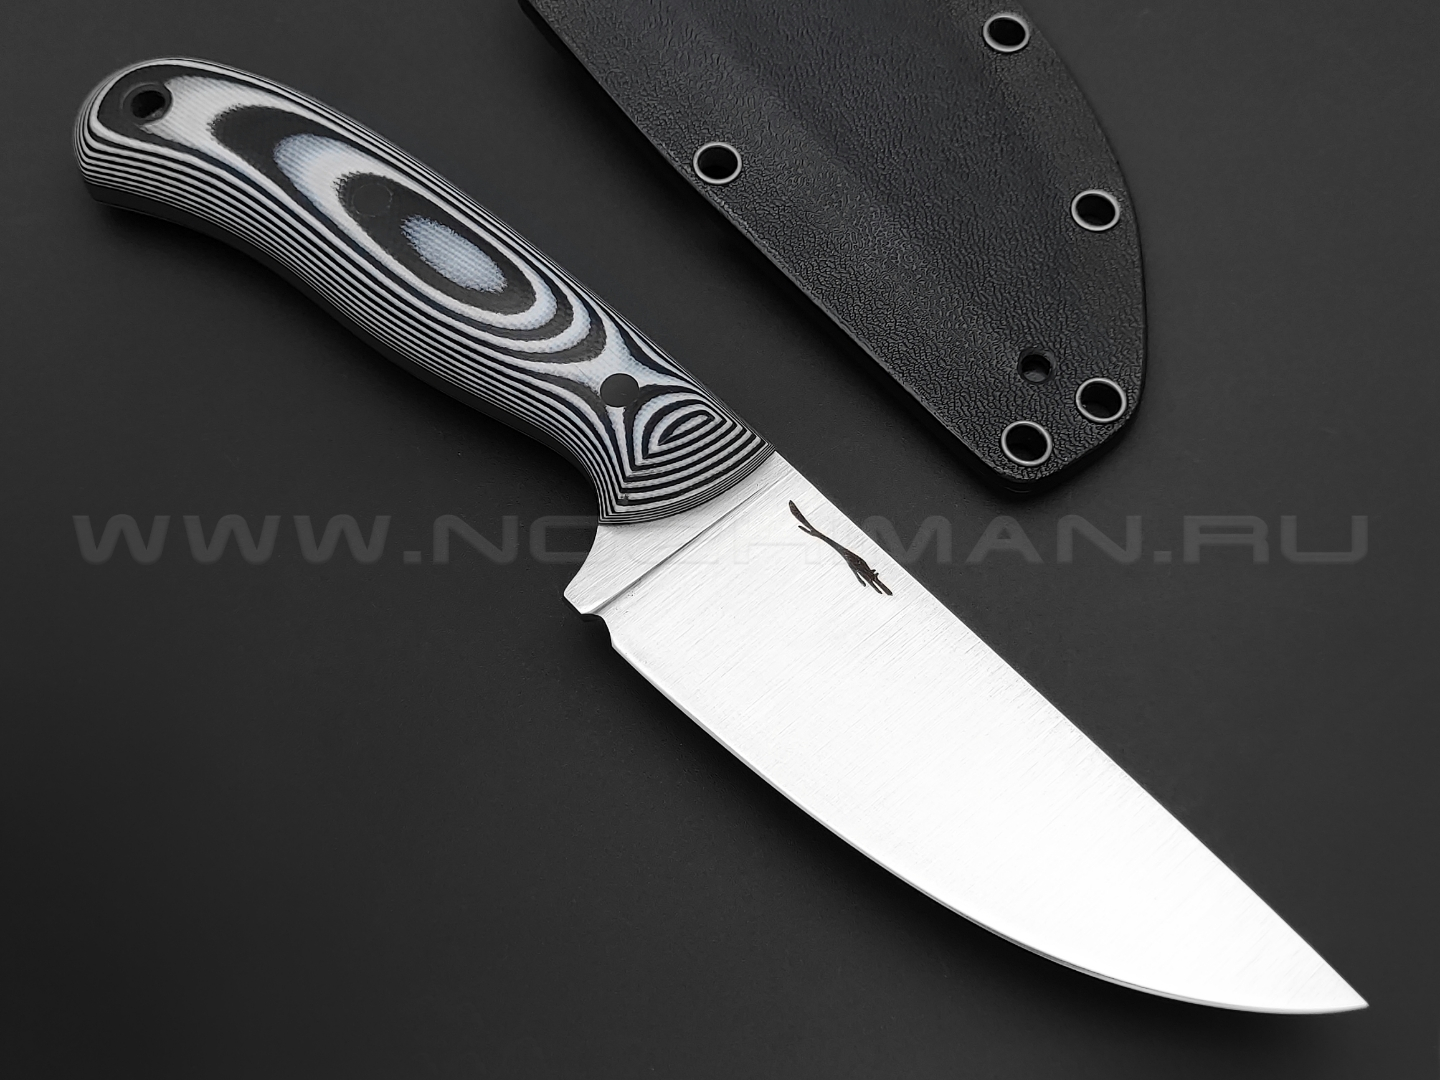 Волчий Век нож Mark-I сталь Niolox WA, рукоять G10 black & white